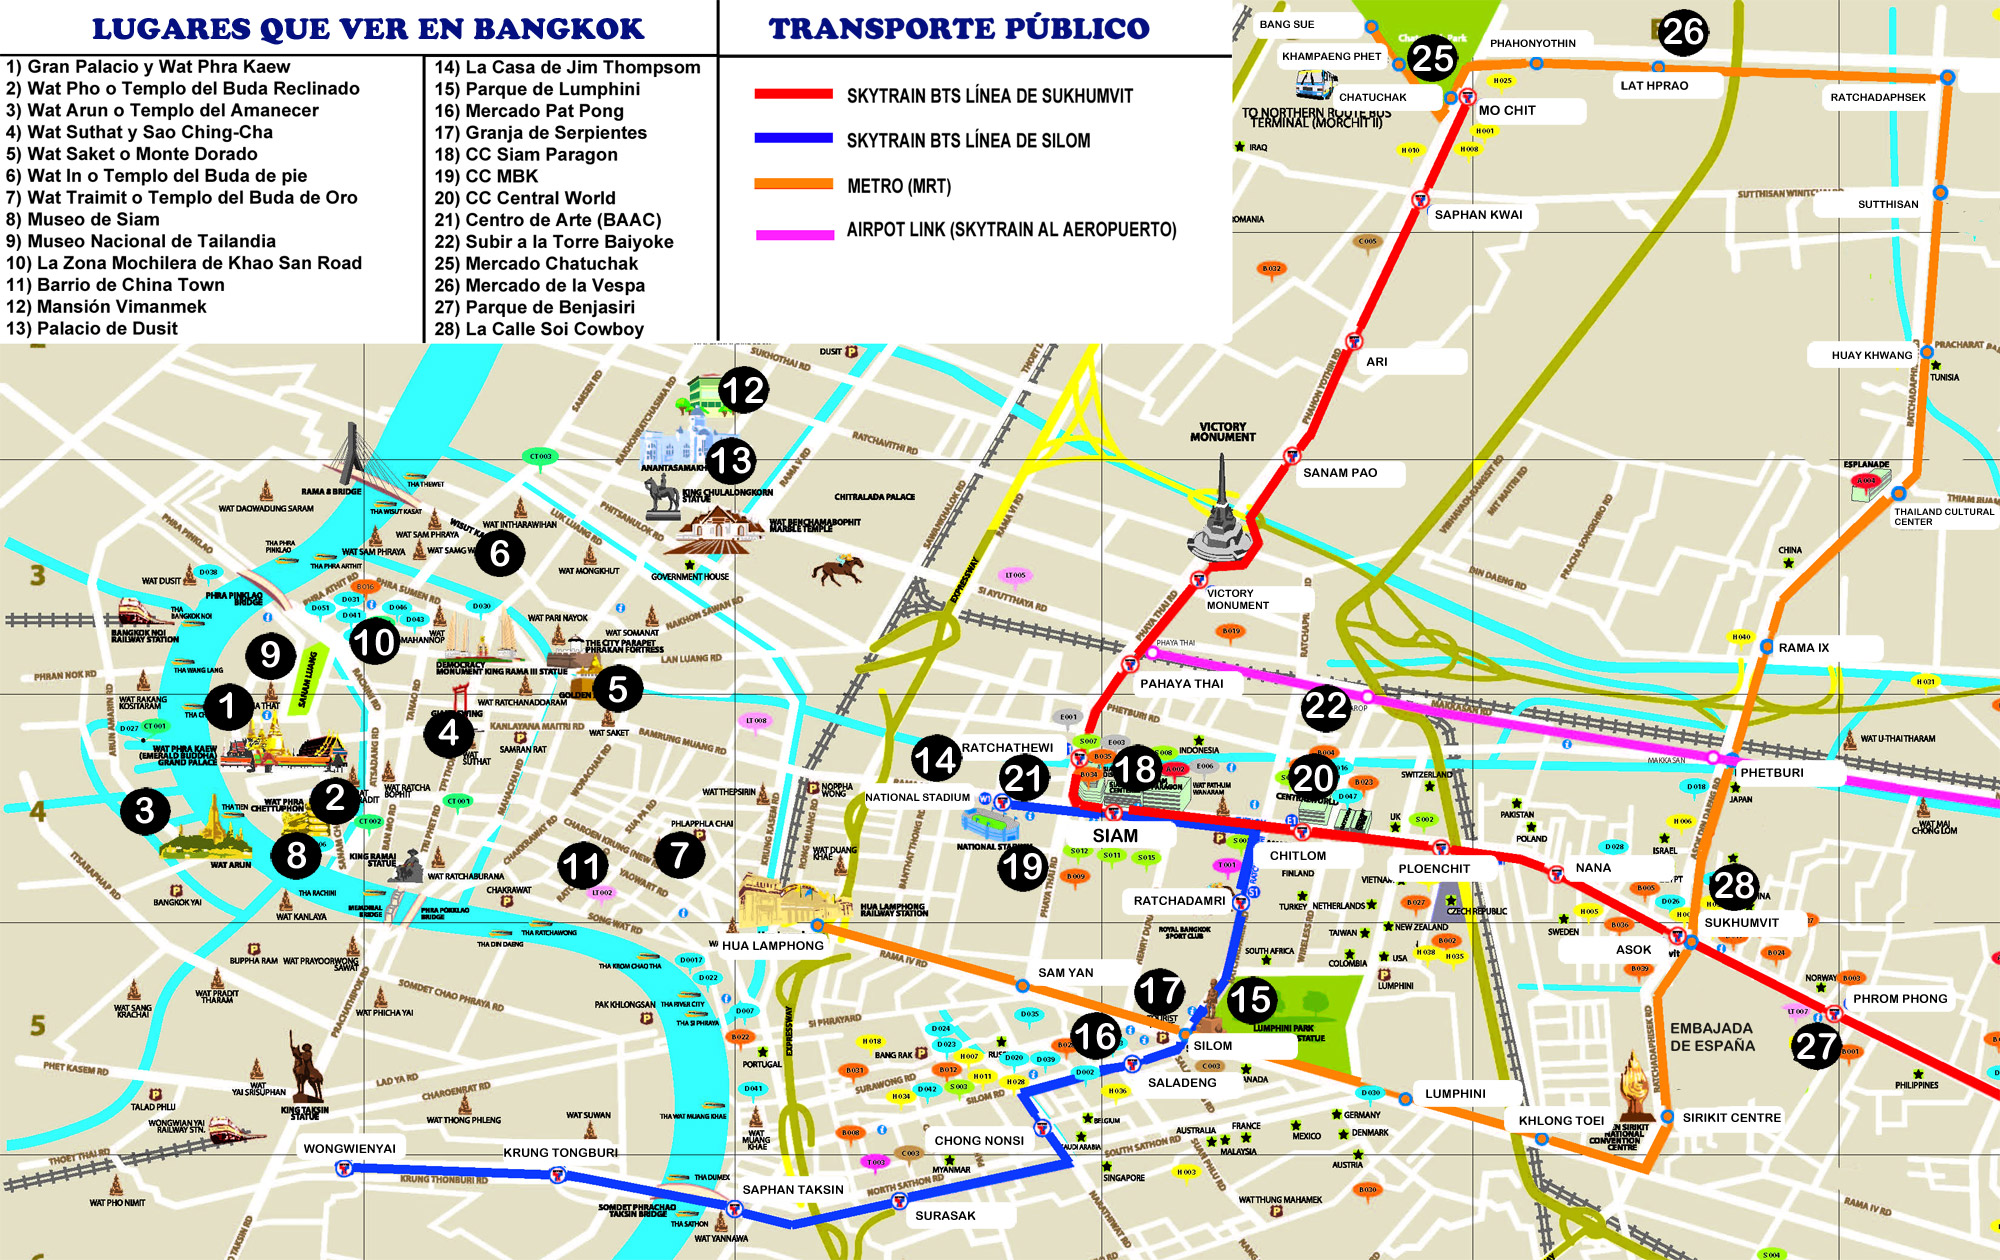 Mapa de Bangkok turistico - Tailandia - Asia